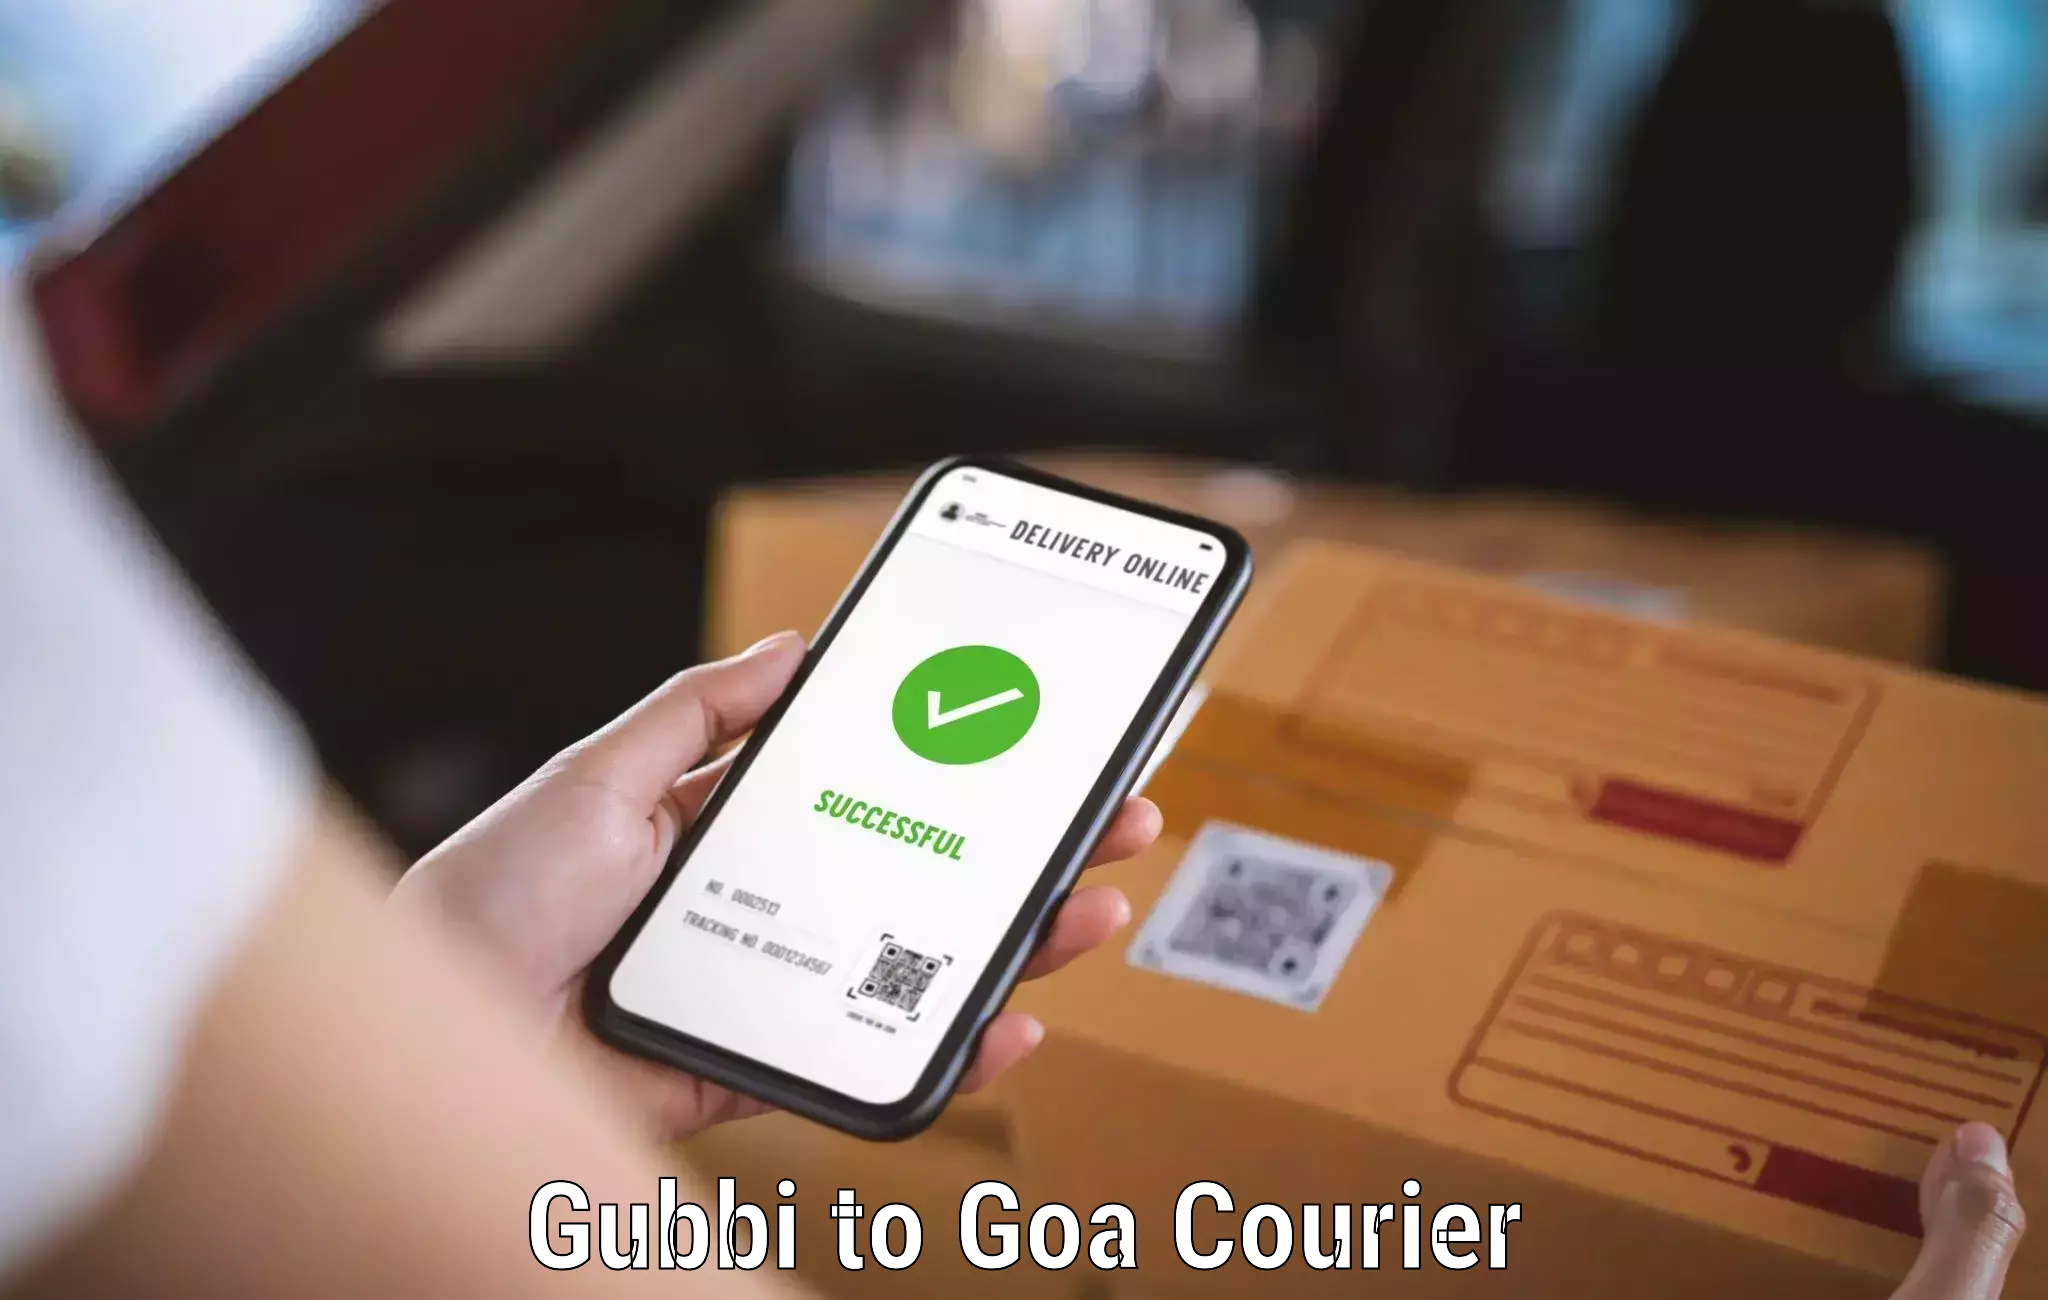 Courier service partnerships Gubbi to Sanvordem